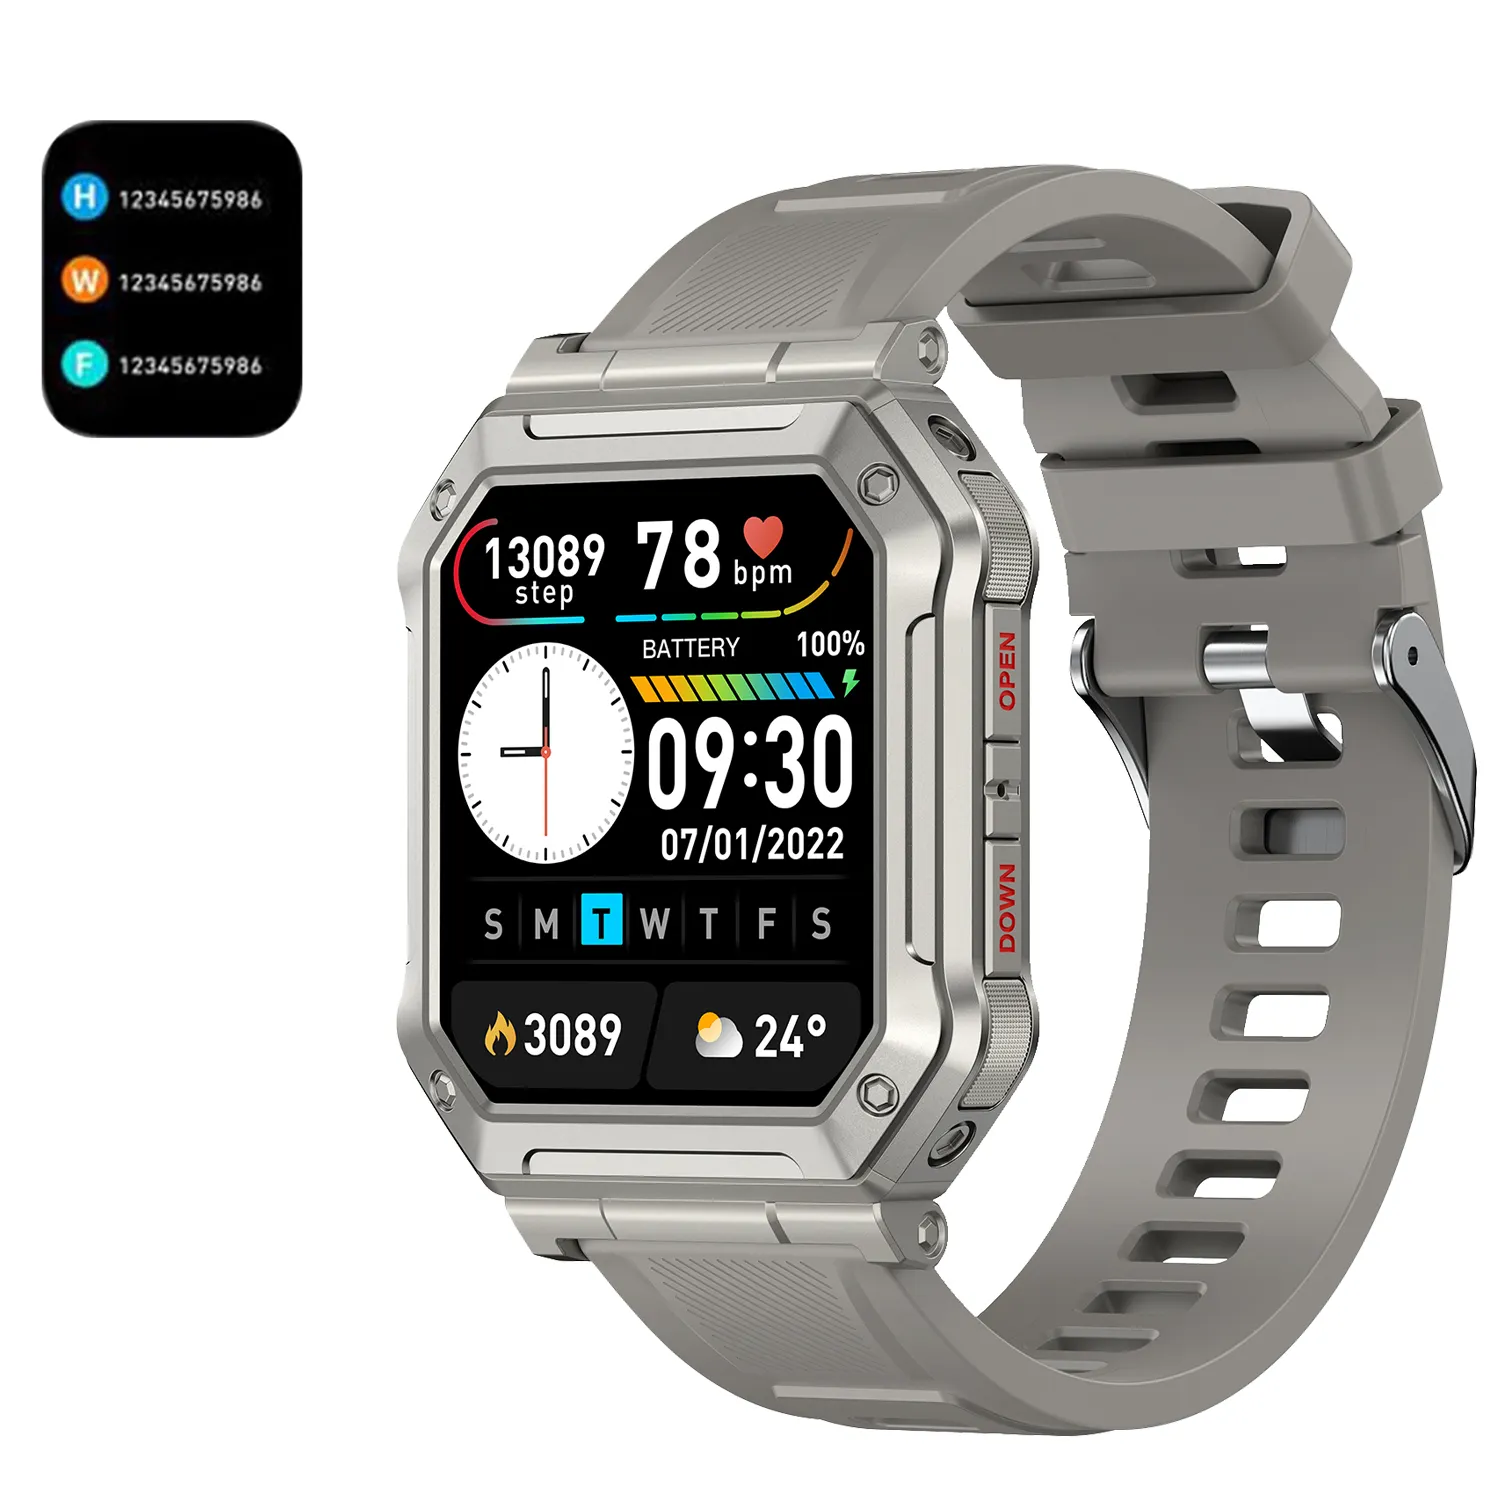 Dokunmatik ekran Bt çağrı akıllı saat Smartwatch cep telefonu konuşurken spor akıllı kol saati akıllı saat cep telefonu bağlayın